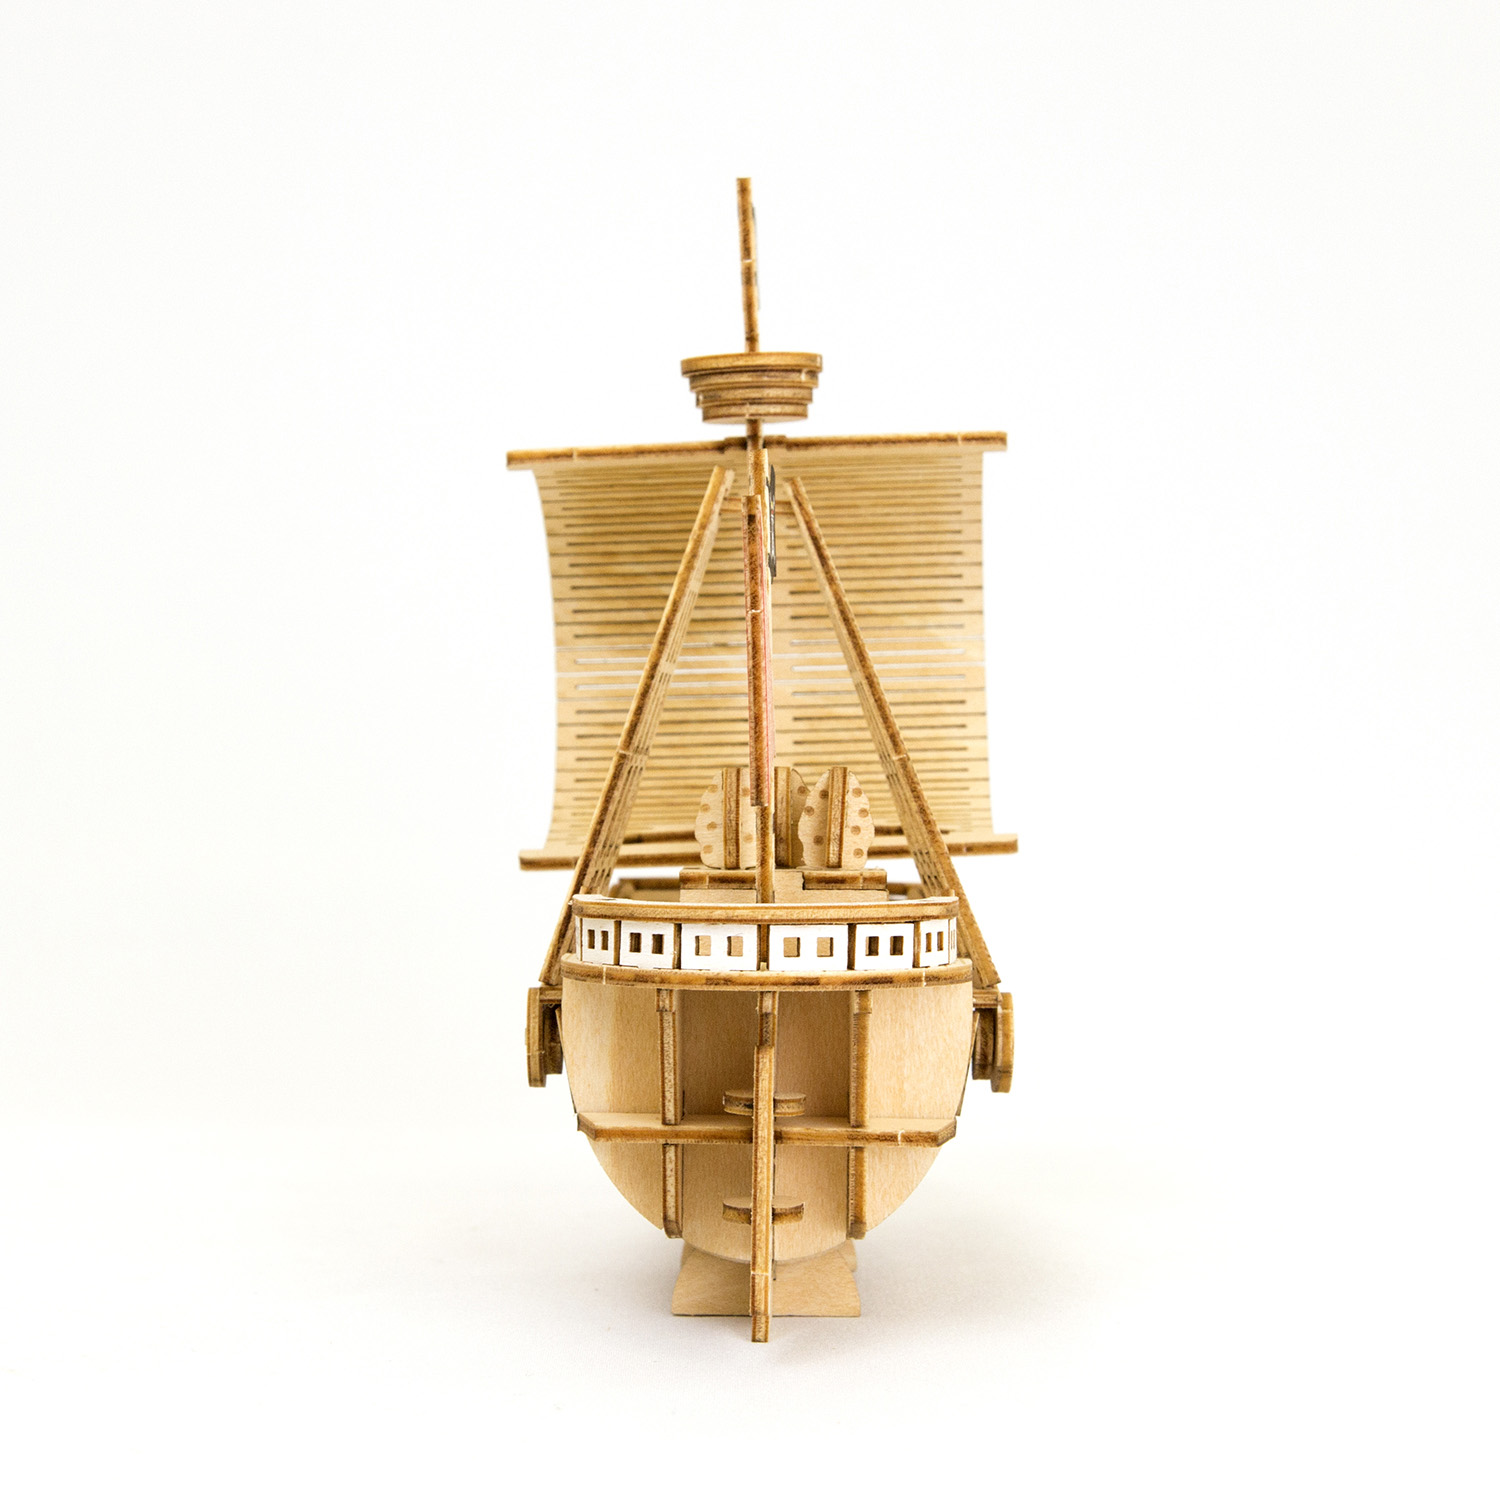 One Piece The Great Ship 03 Going Merry Kit de Construção - WPKR Store -  Objetos de Decoração - Magazine Luiza